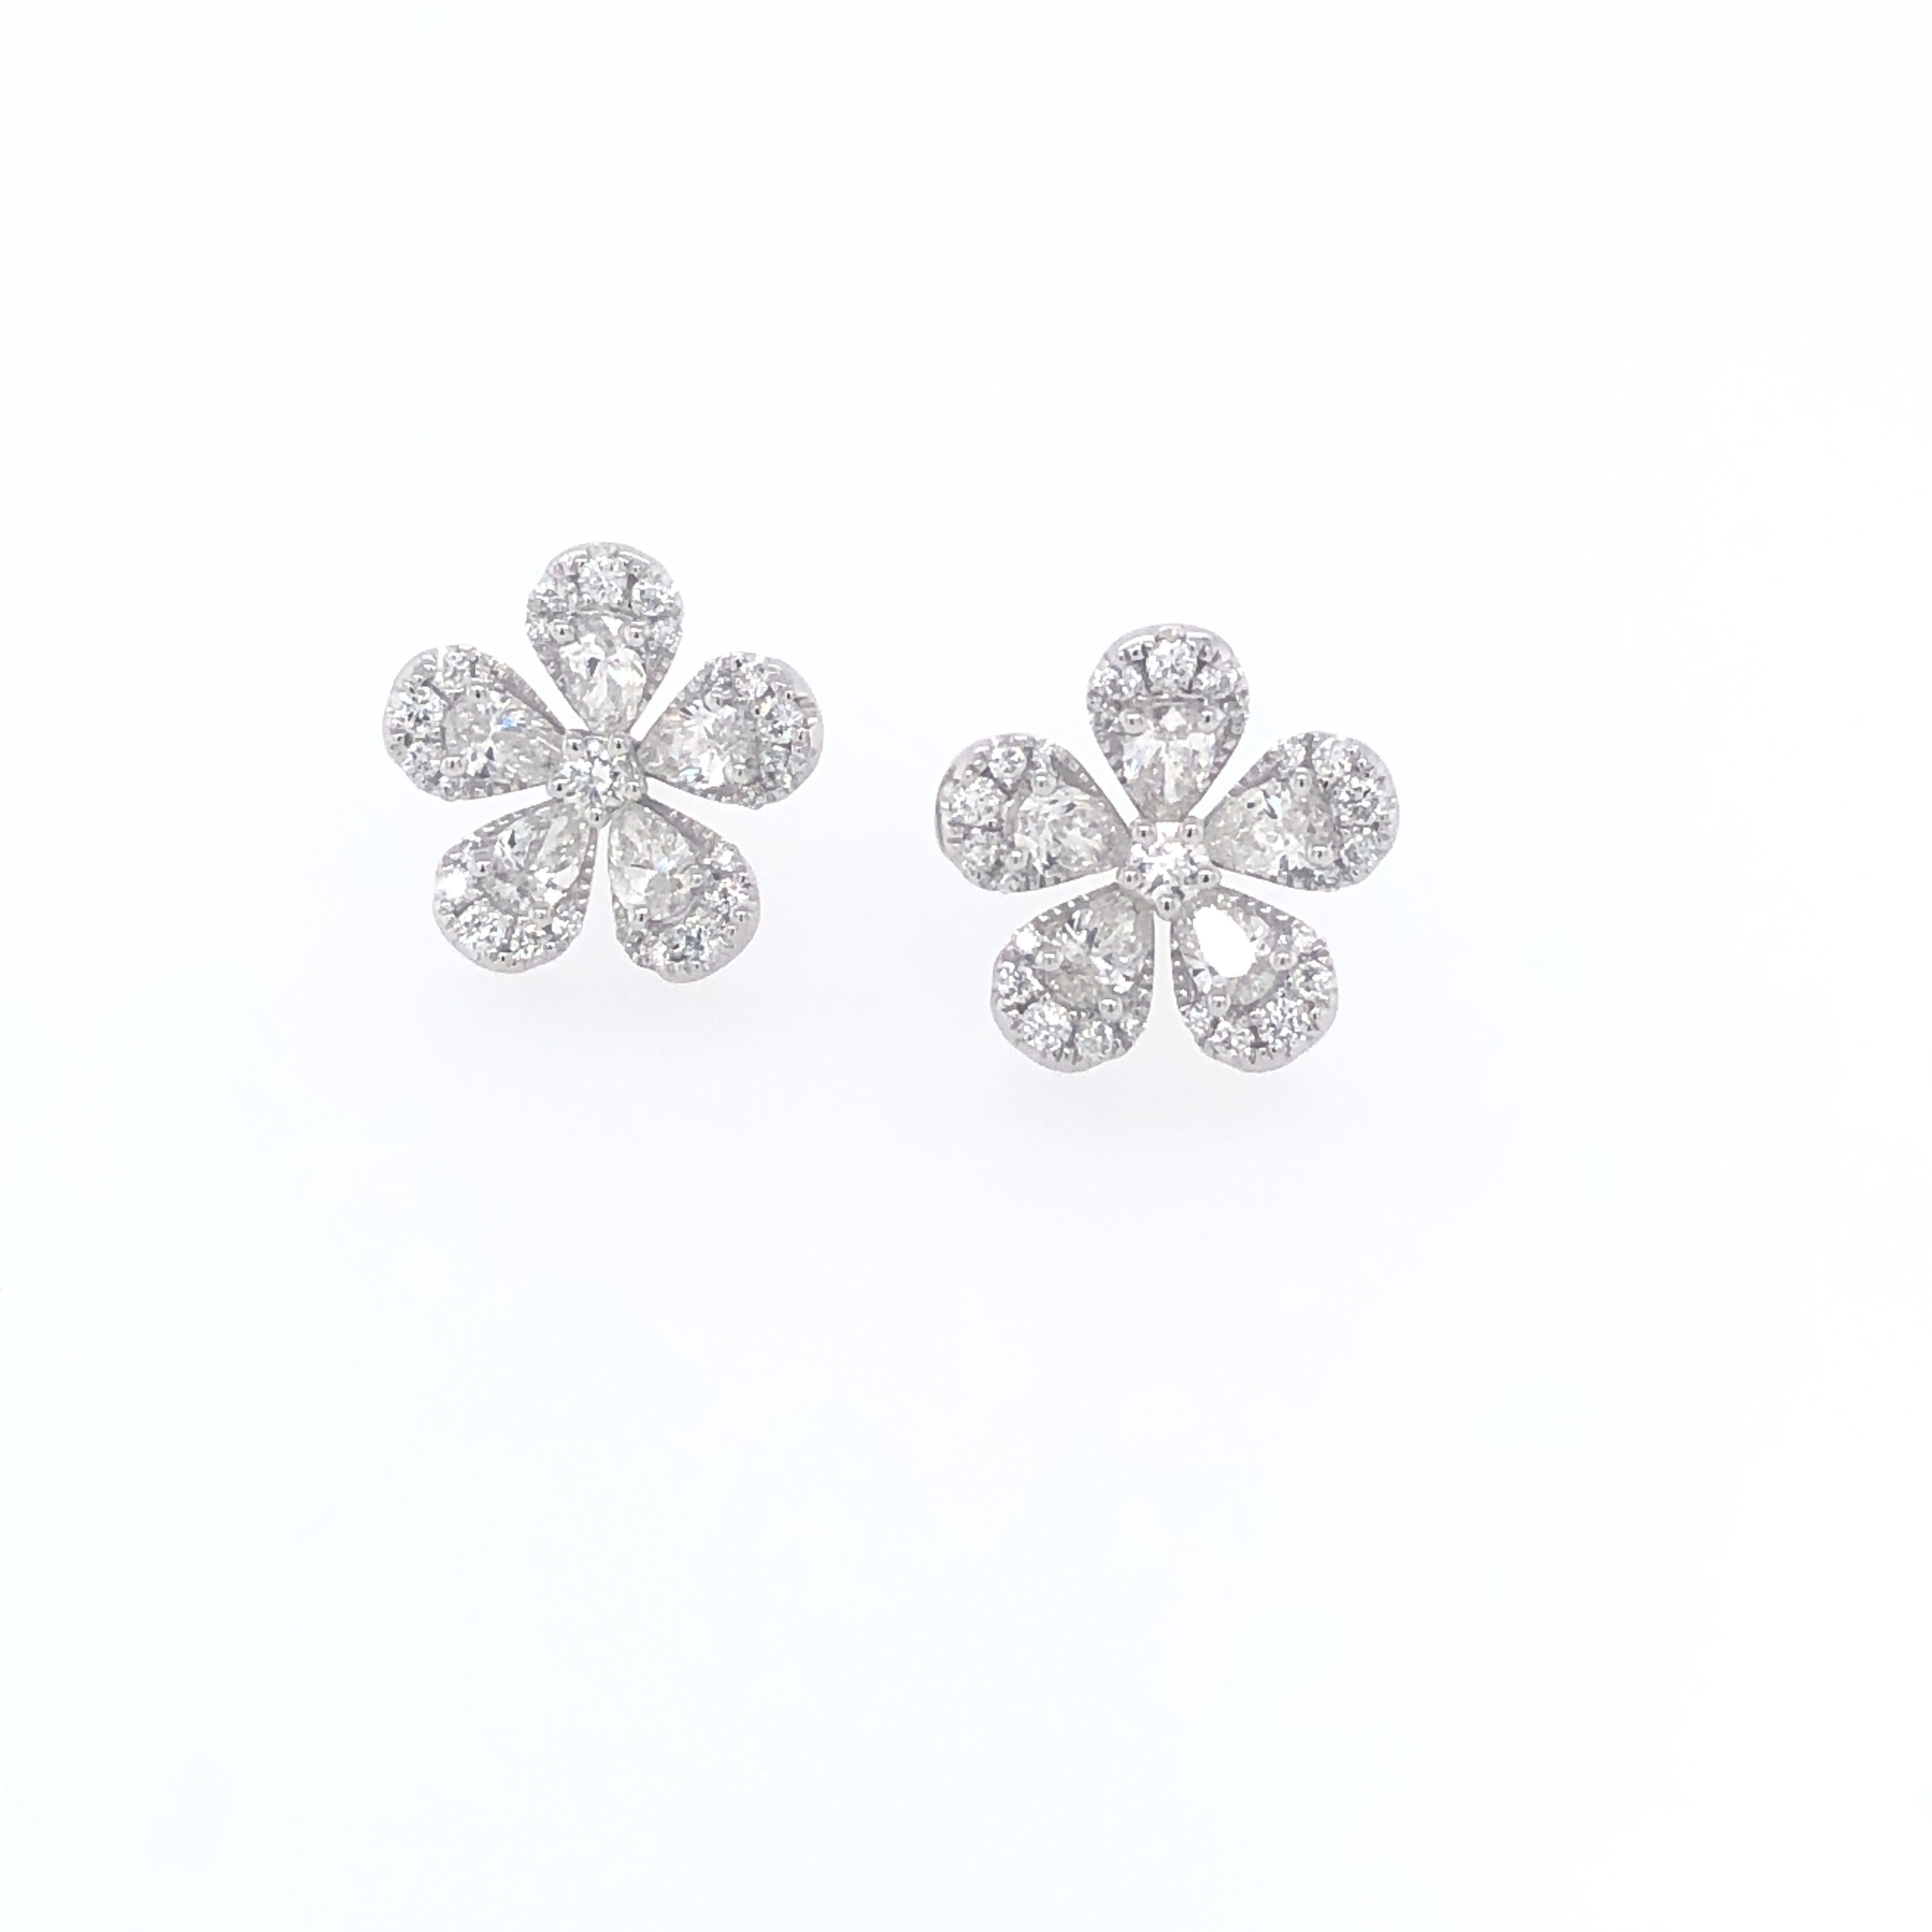 White Gold and Diamond Blossom Earrings — Sheryl Jones